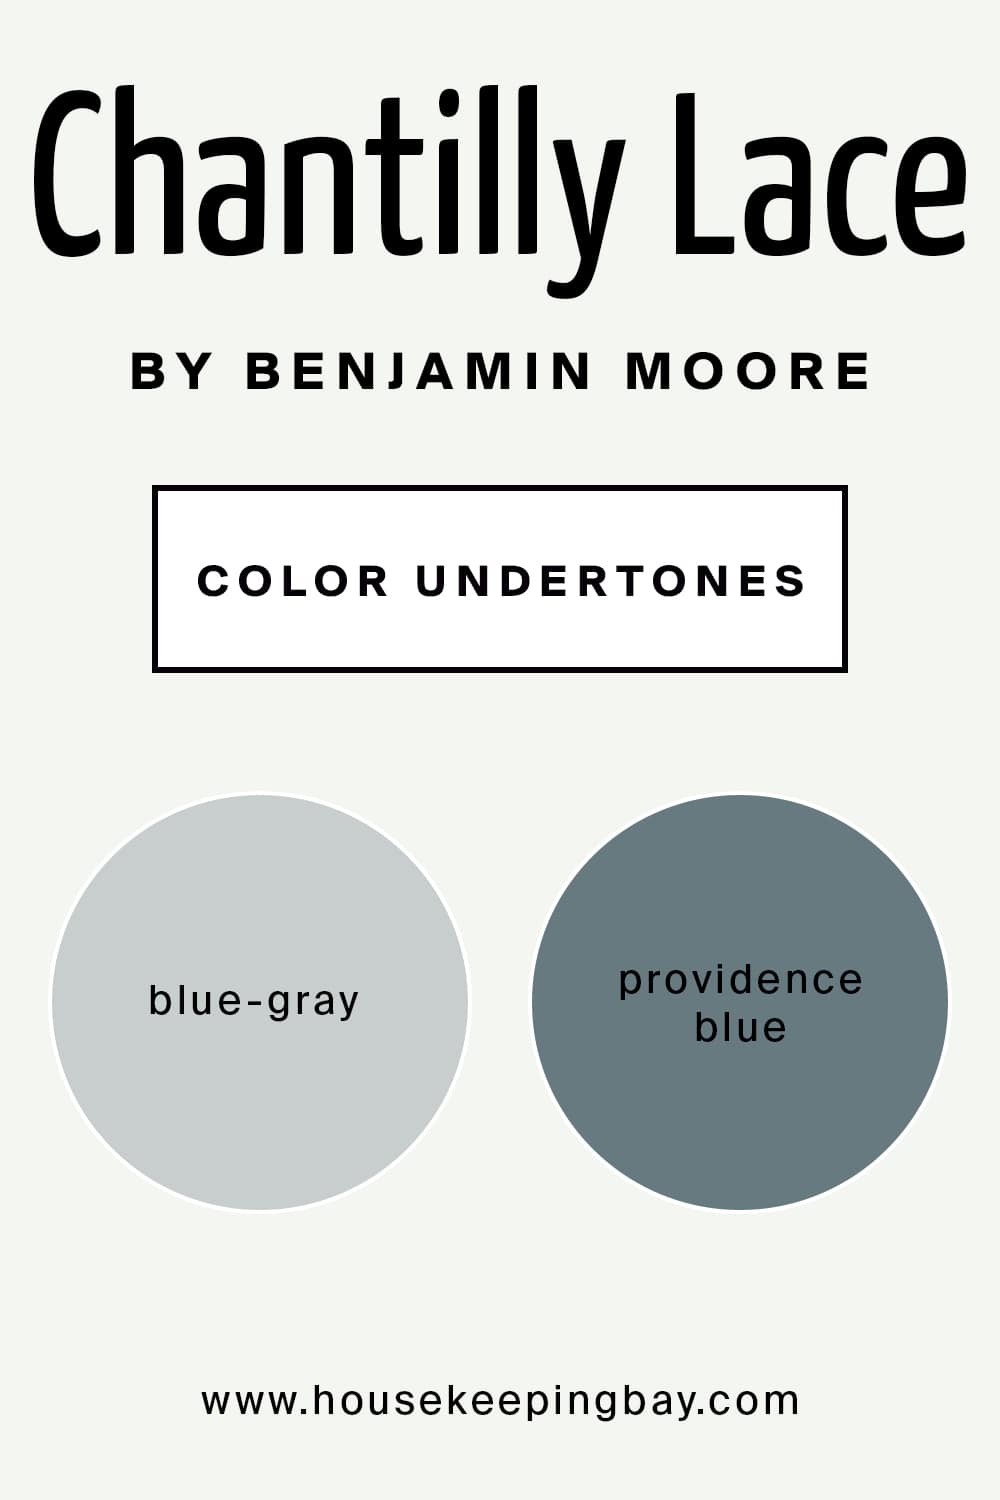 Chantilly Lace by Benjamin Moore Color Undertones